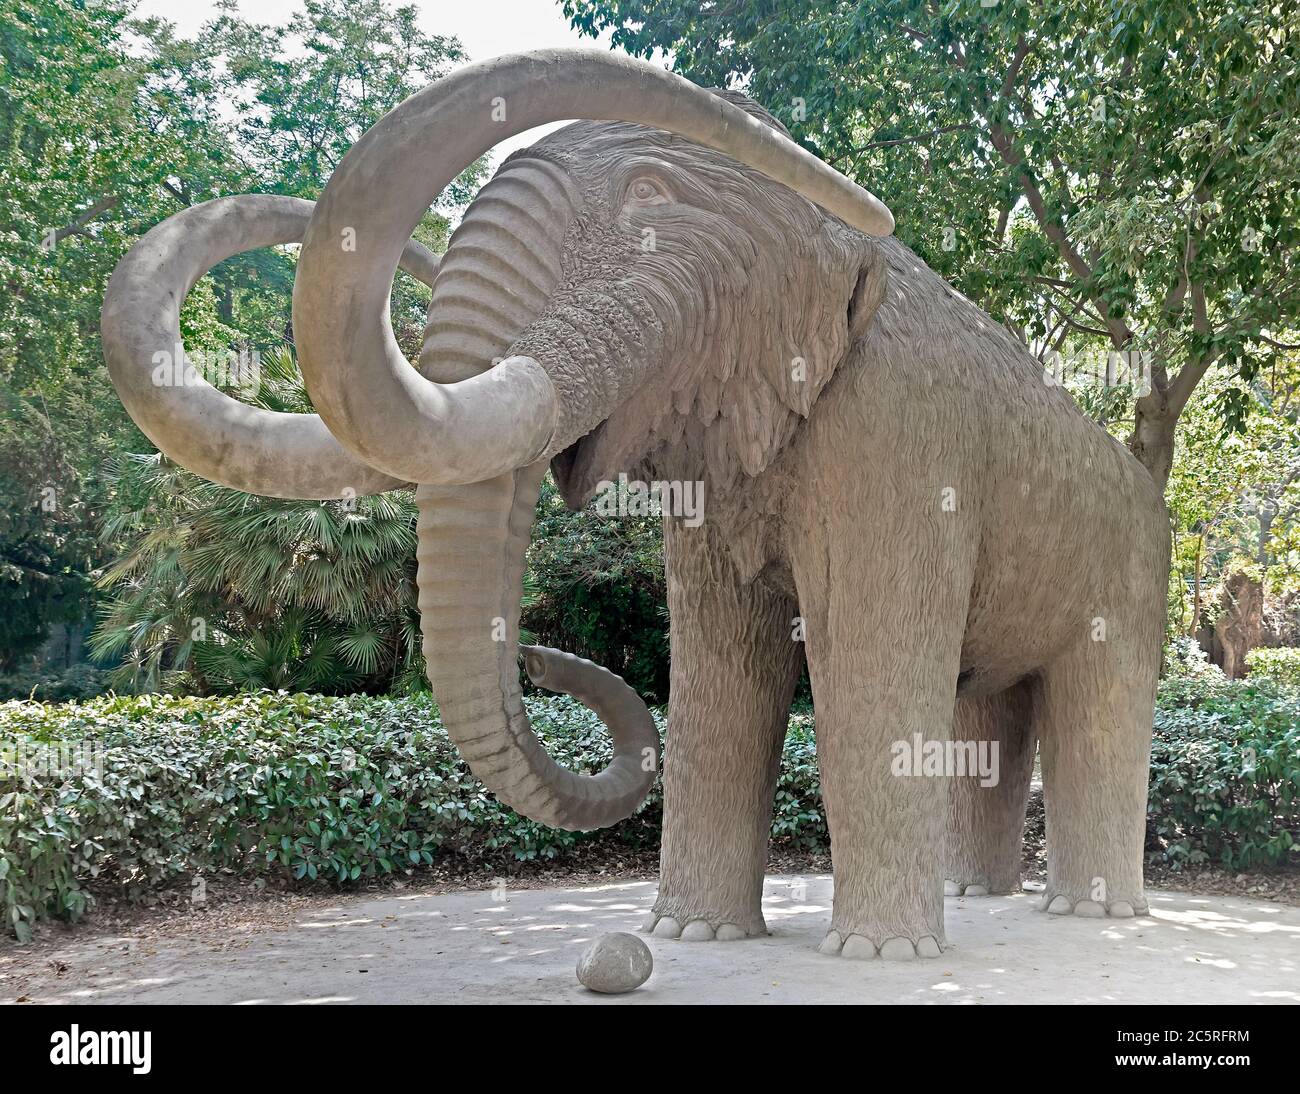 BARCELONA, SPAIN - JULY 12, 2015: Mammoth statue in Parc de la Ciutadella in Barcelona, Spain.  Barcelona, Spain - July 12, 2015: Mammoth statue in Pa Stock Photo